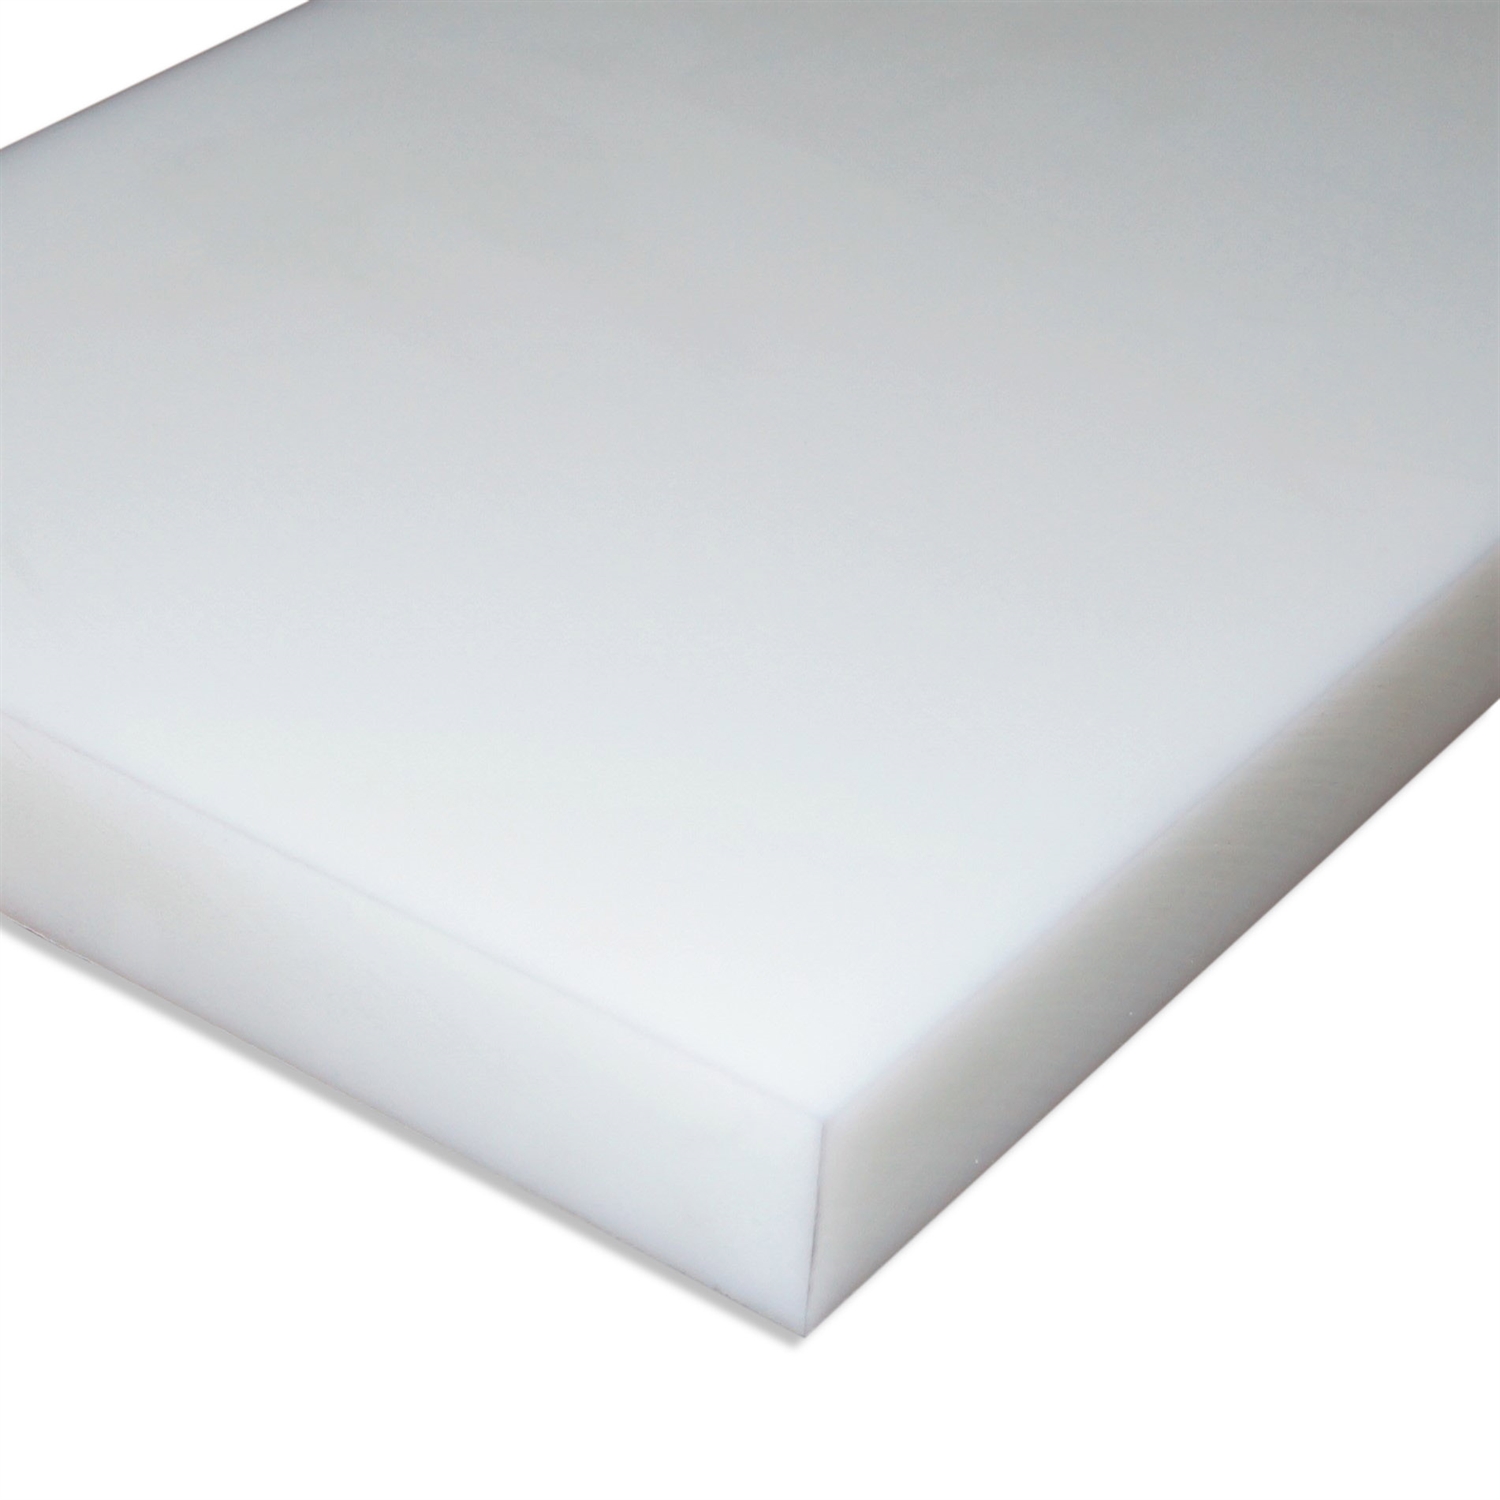 POM natur 500x500x3mm weiß Platte Zuschnitt Kunststoff Halbzeug 